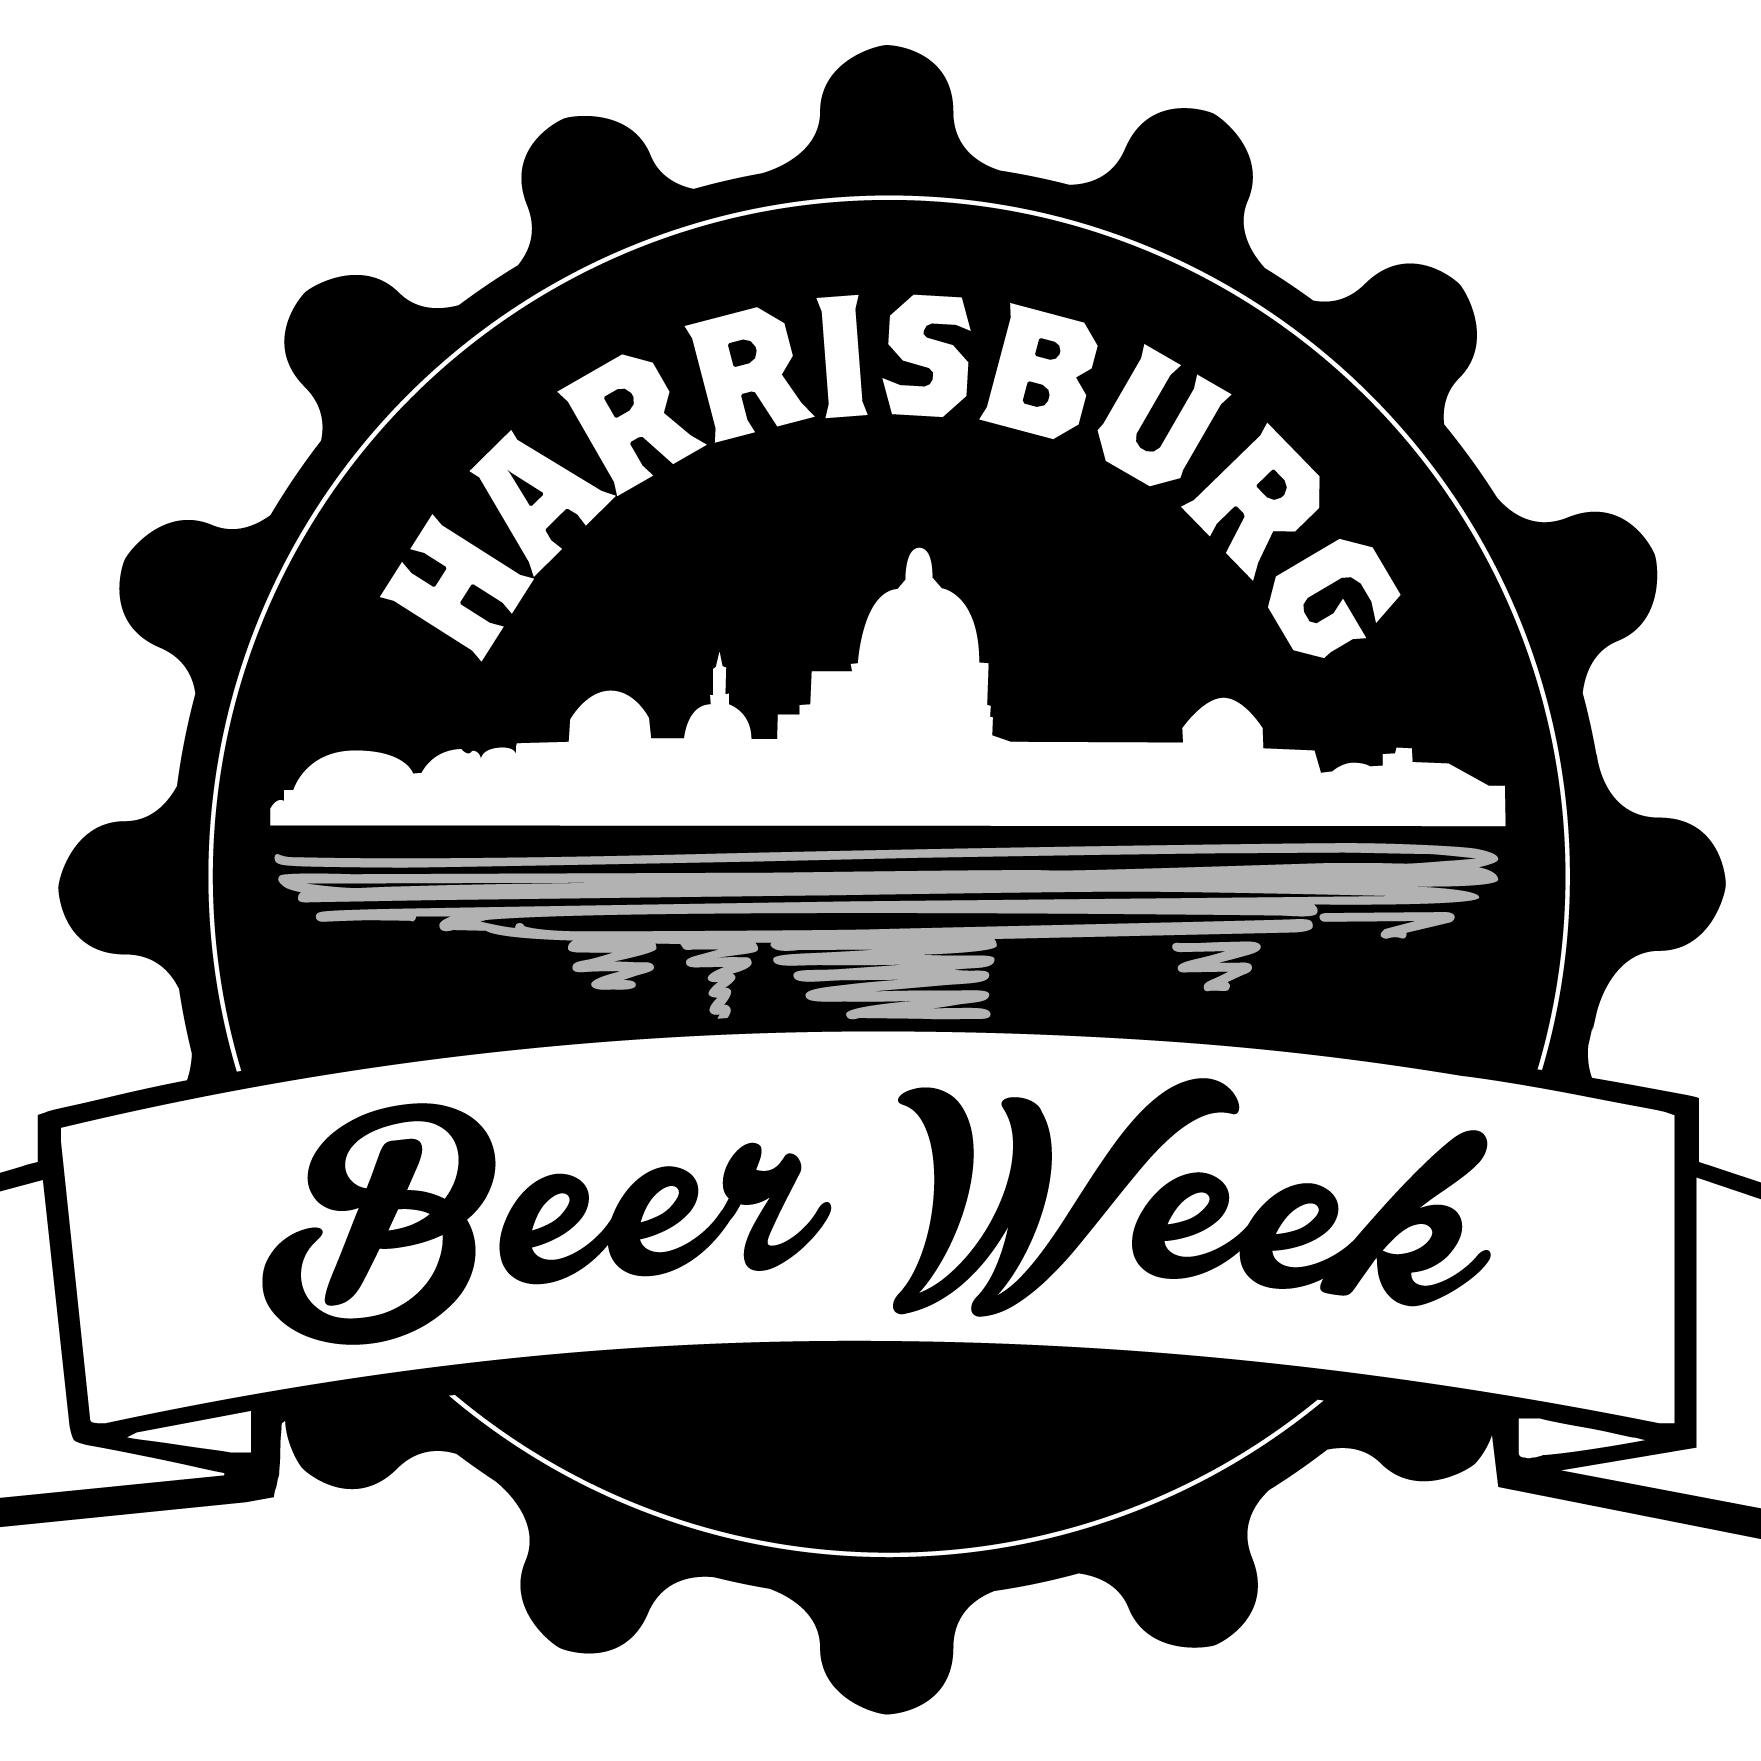 Greater Harrisburg's Beer Week. April 17-26, 2020. Craft beer events, demonstrations & education at breweries, restaurants, pubs, etc. #HBGBeerWeek